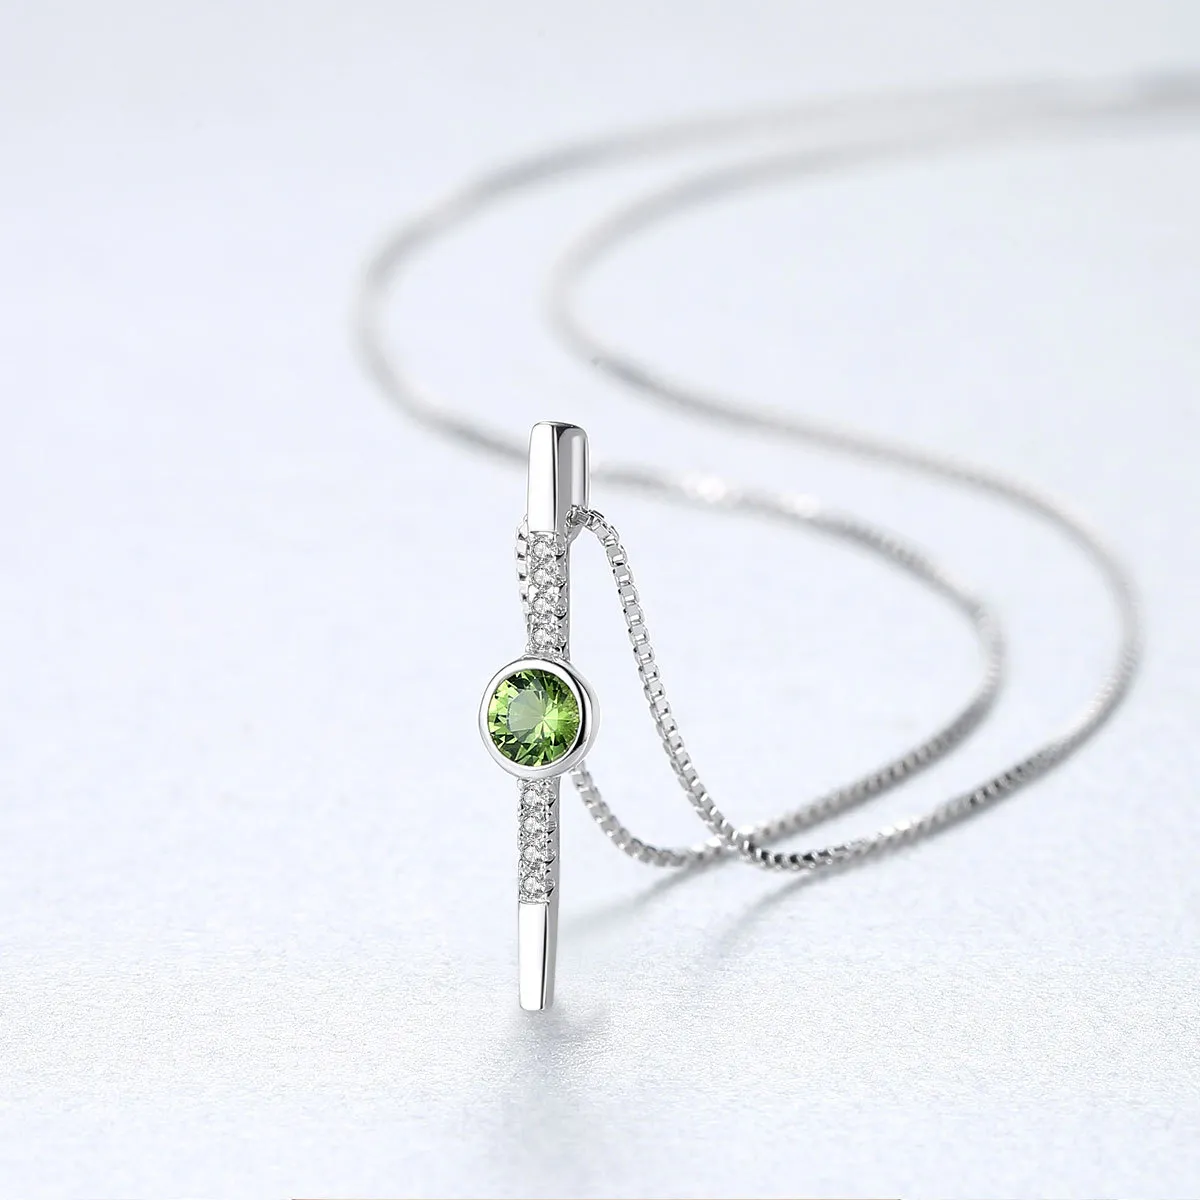 Европейский стиль оливковые зеленые драгоценные камни 925 Серебряное подвесное ожерелье минималистское дизайн микро-настройки Женщины Женские Коллек